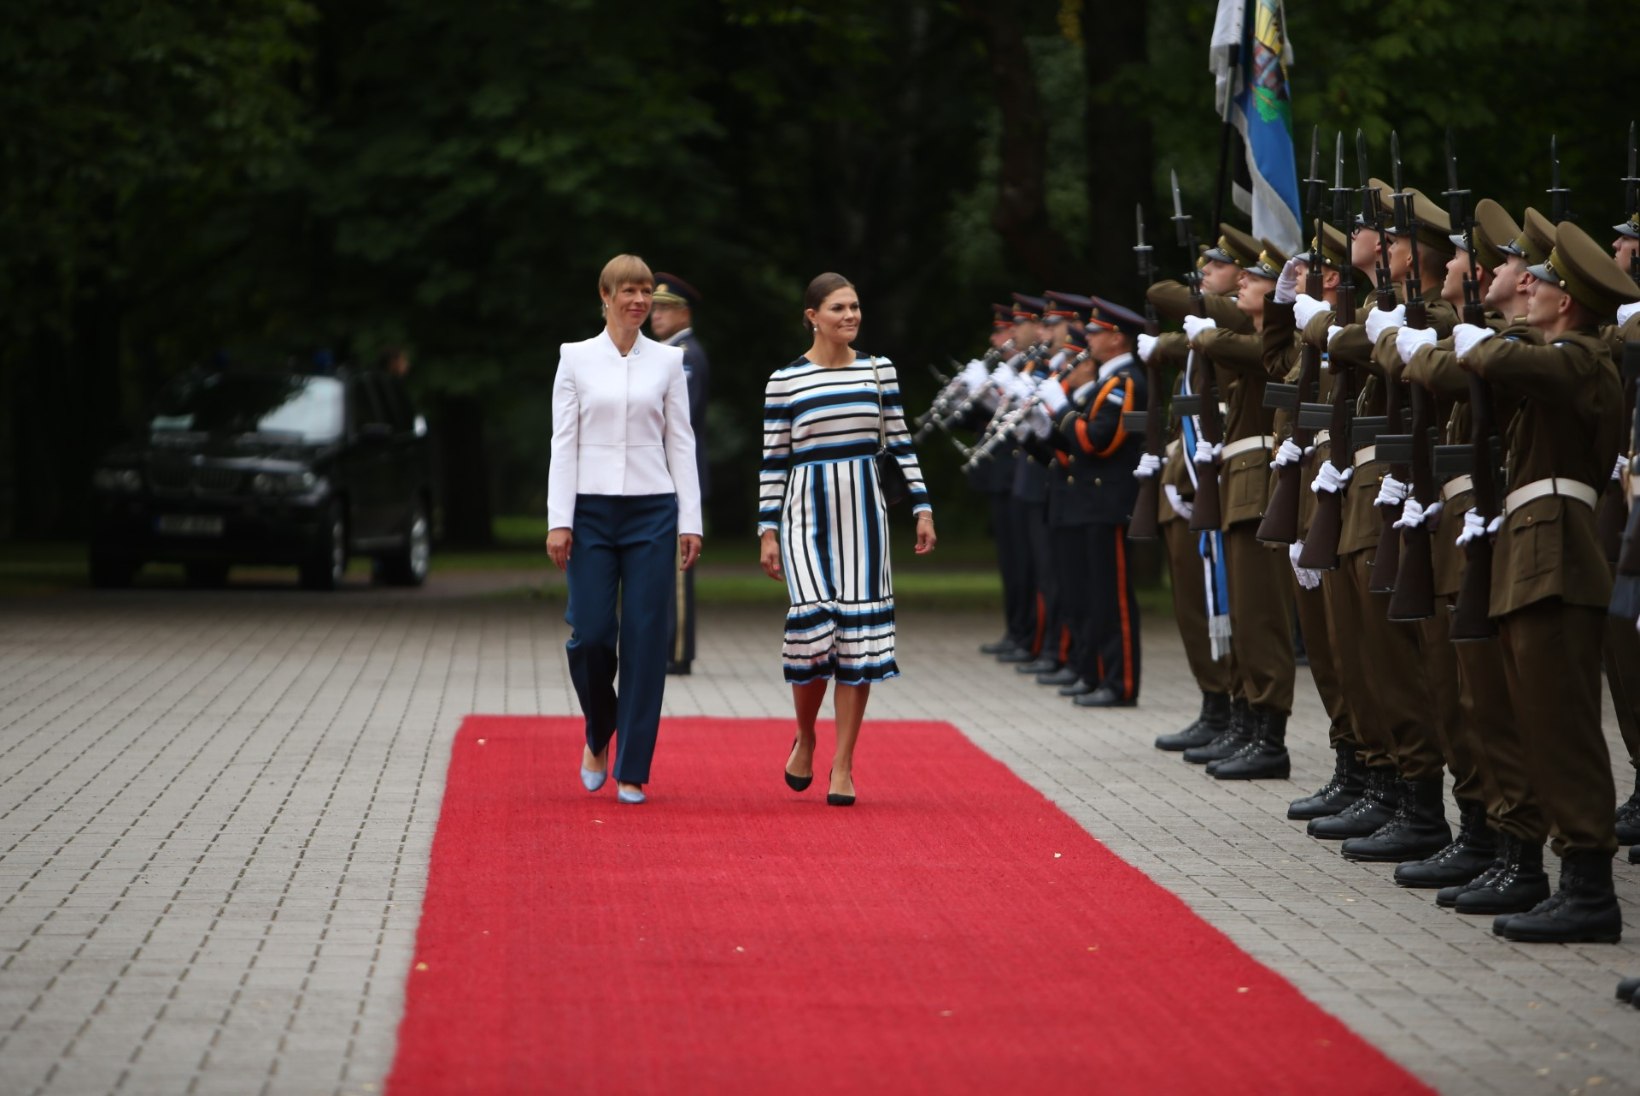 FOTOD | Kroonprintsess Victoria tervitas presidenti Eesti lipuvärvides kleidis, Kaljulaid vahetas poole kohtumise ajal riideid